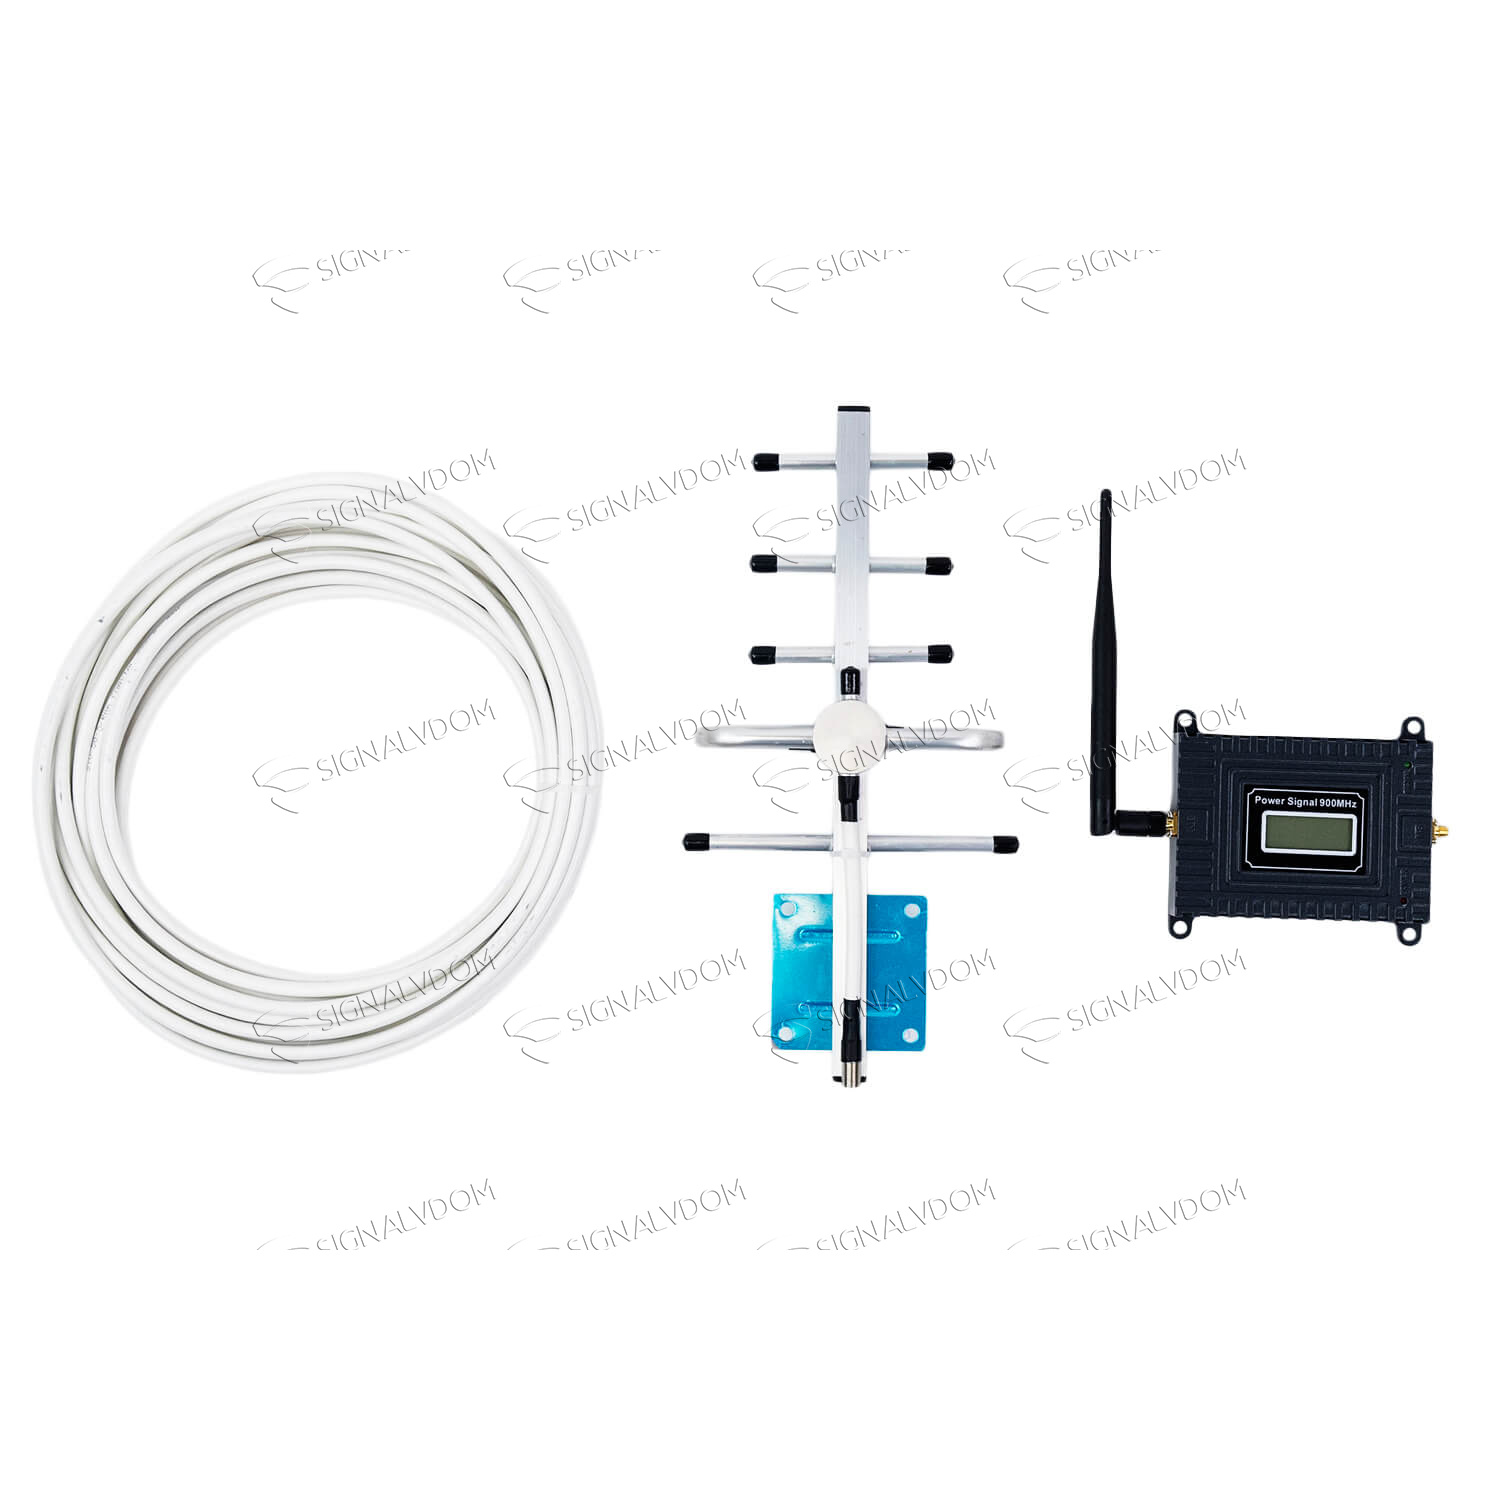 Усилитель сигнала Power Signal 900 MHz (для 2G) 65 dBi, кабель 10 м., комплект